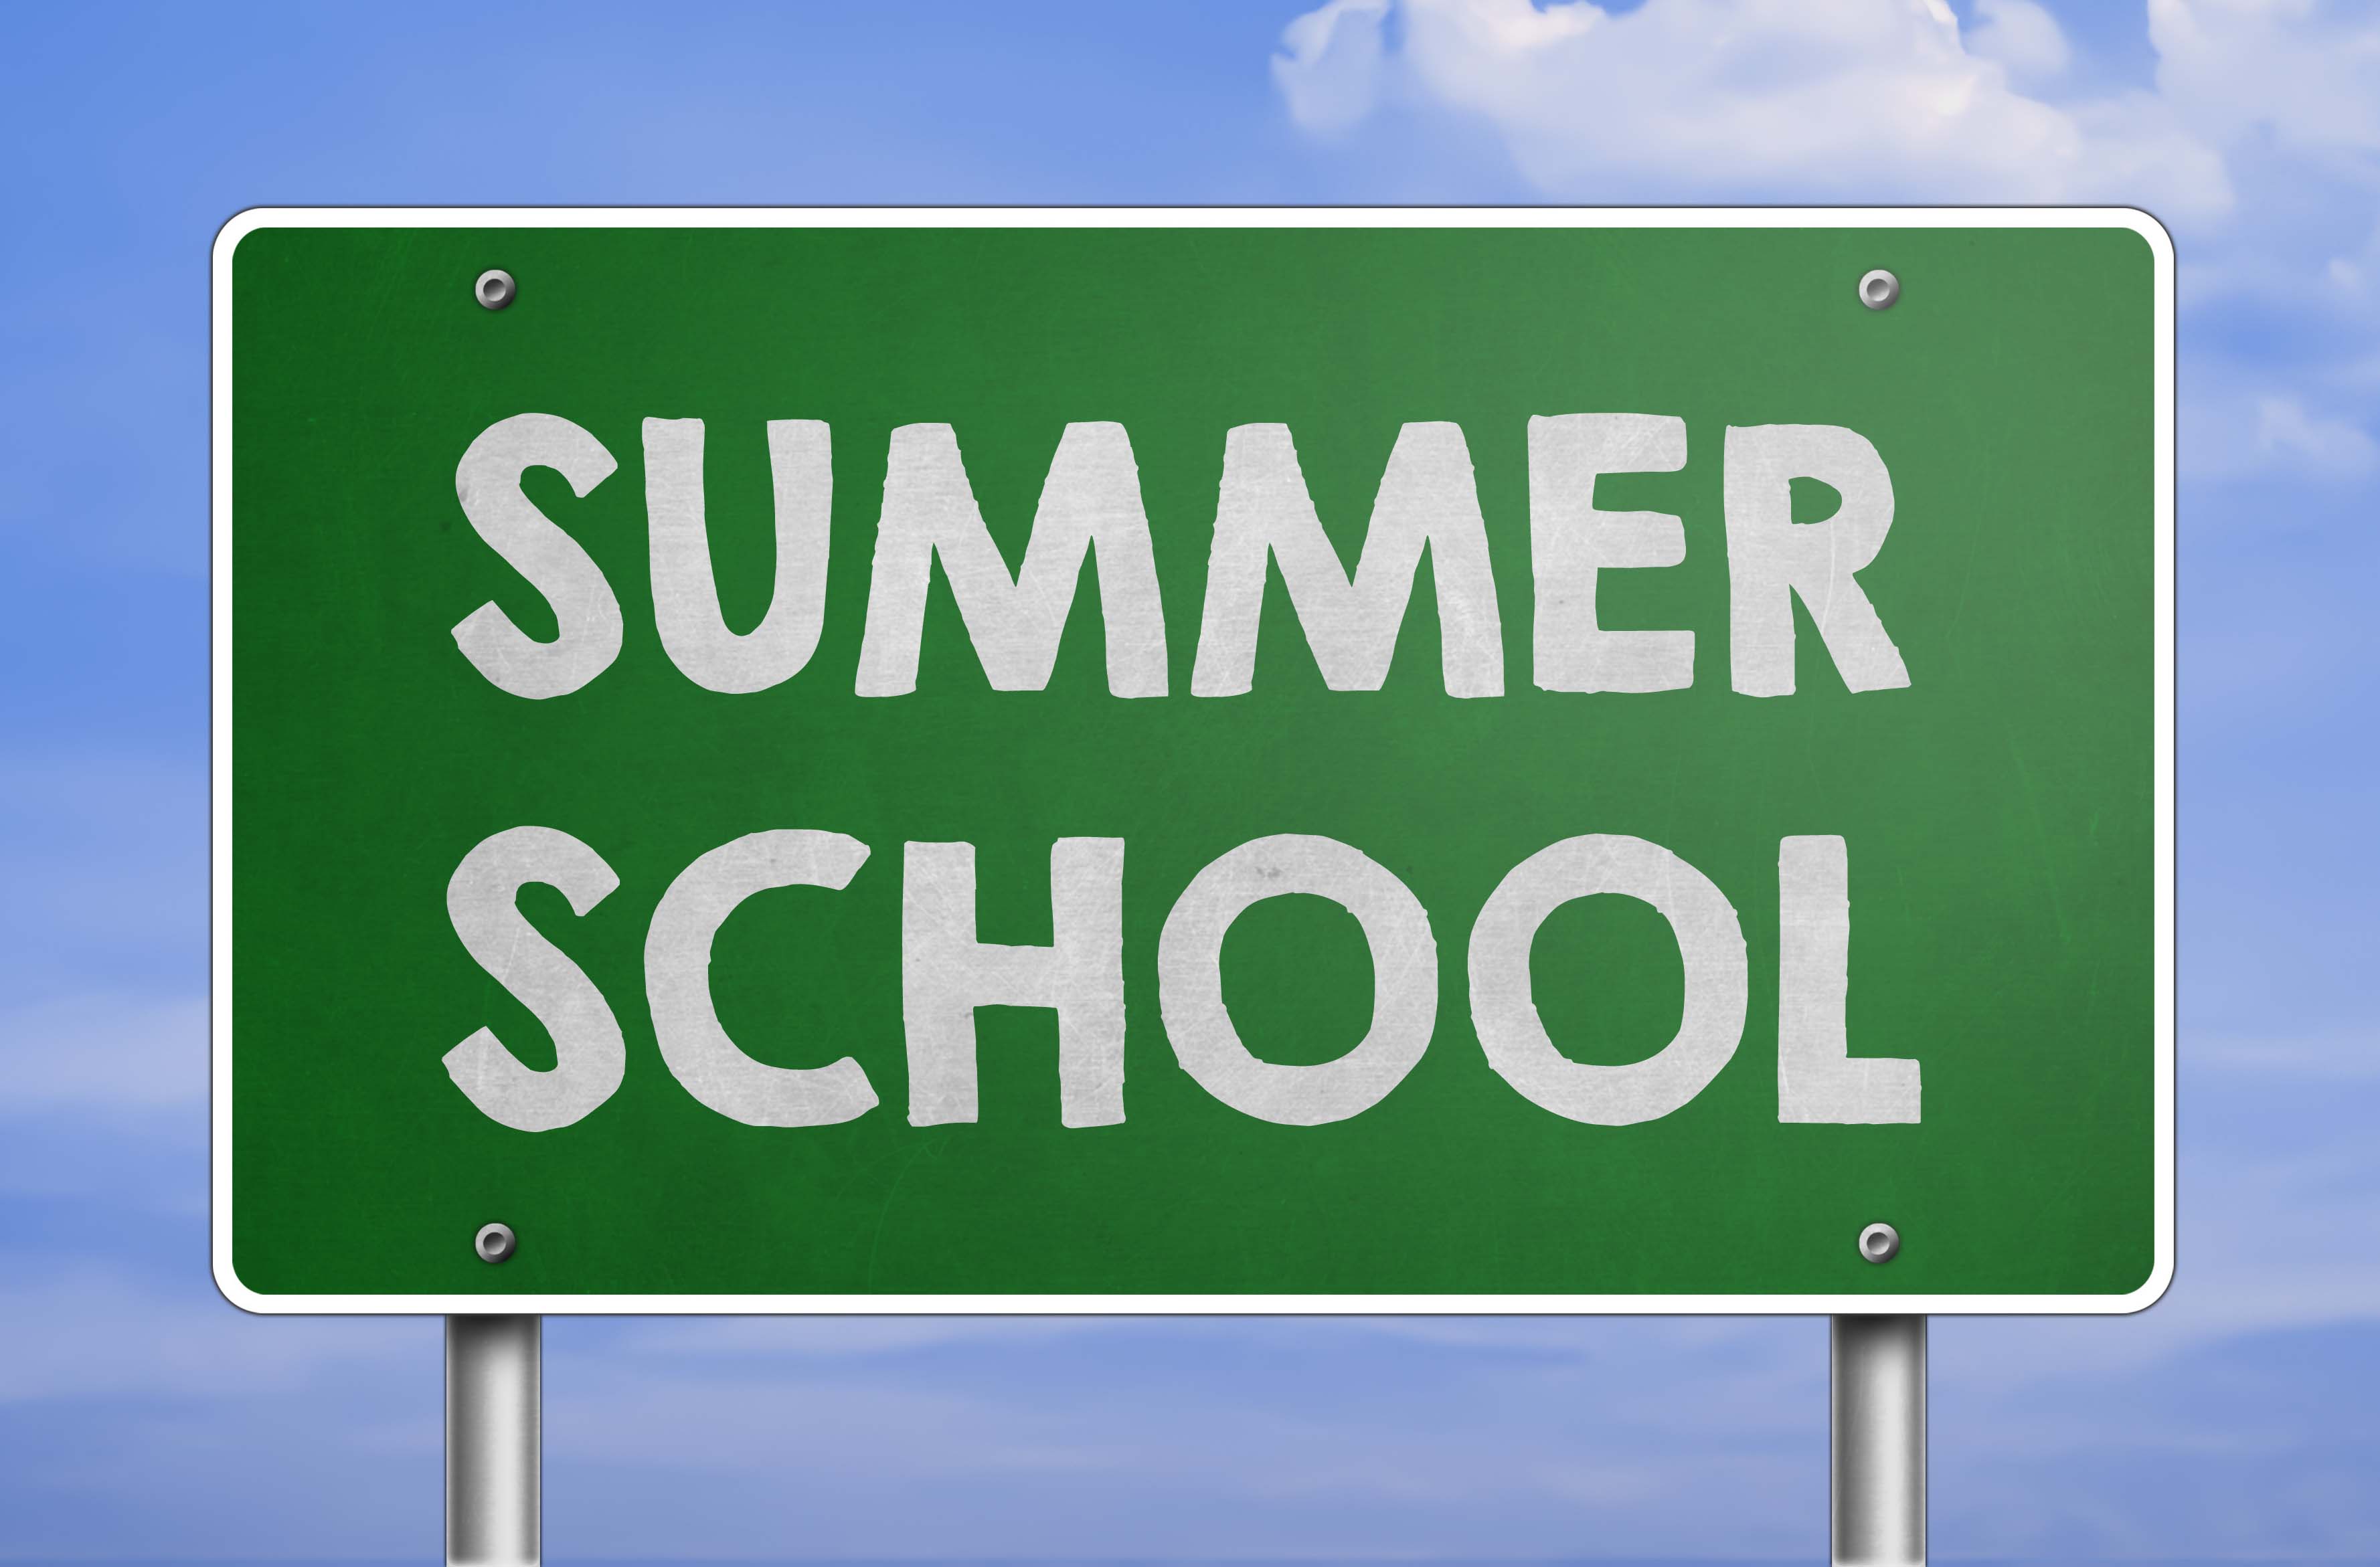 Maine West High School - Summer School Registration is Open